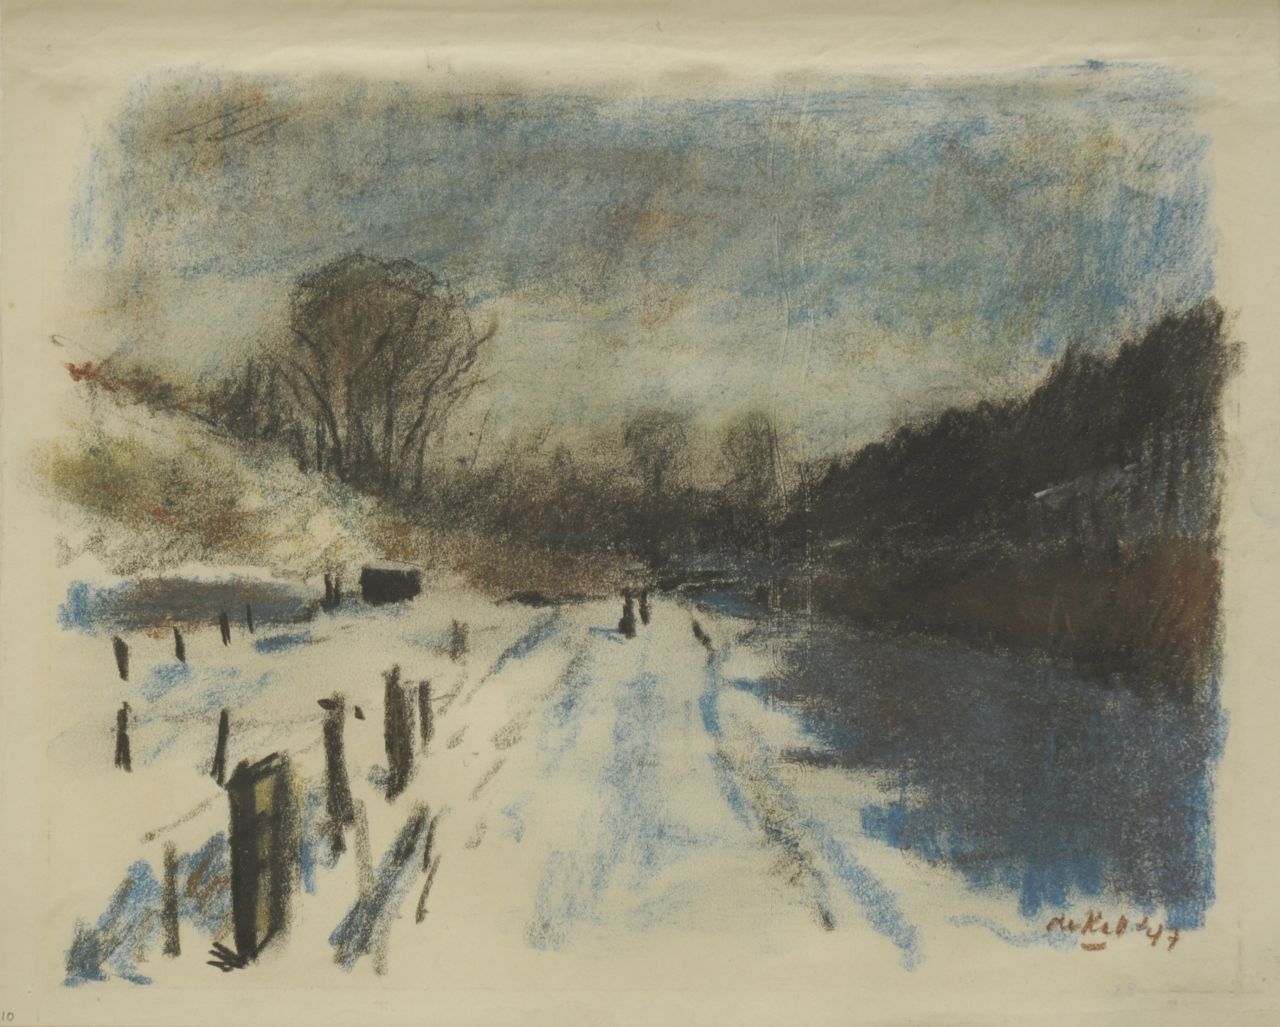 Kat O.B. de | 'Otto' Boudewijn de Kat, Snow landscape, Pastell auf Papier 21,8 x 27,0 cm, signed l.r. und dated '47